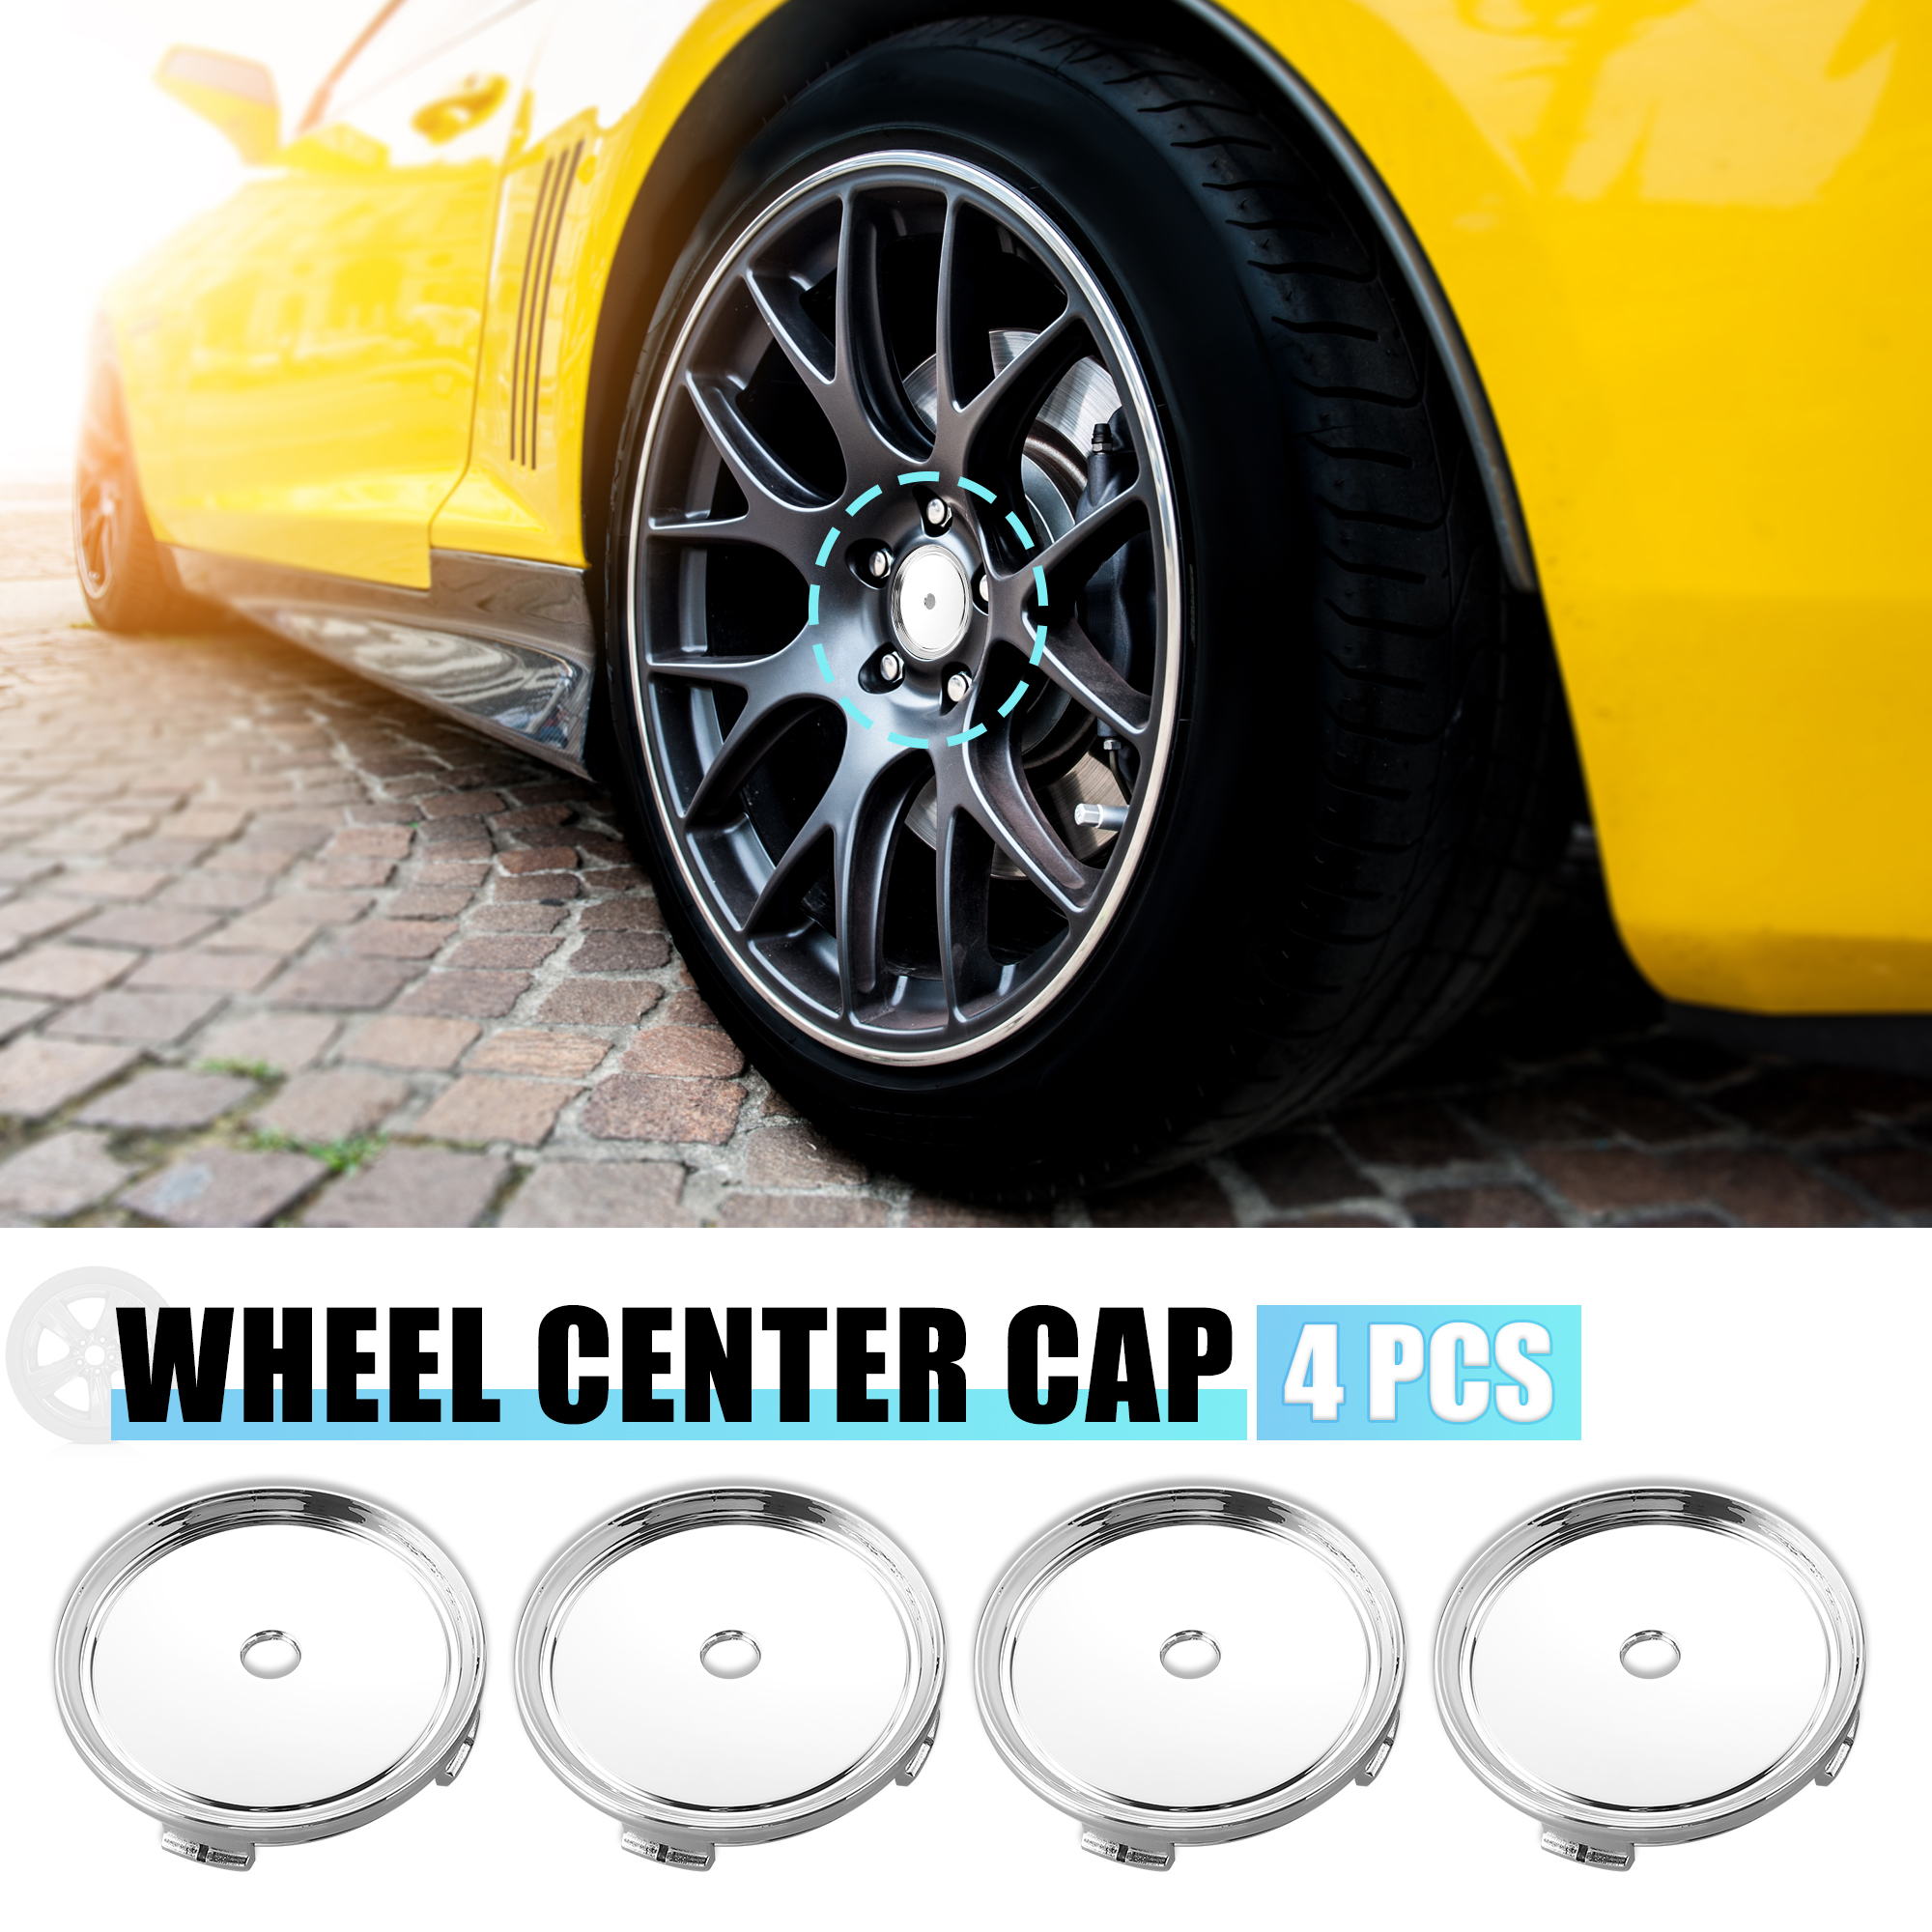 Unique Bargains 4pcs 75mm Dia Silver Tone 4 Clips Automotive Wheel Center Tyre Hub Caps Cover